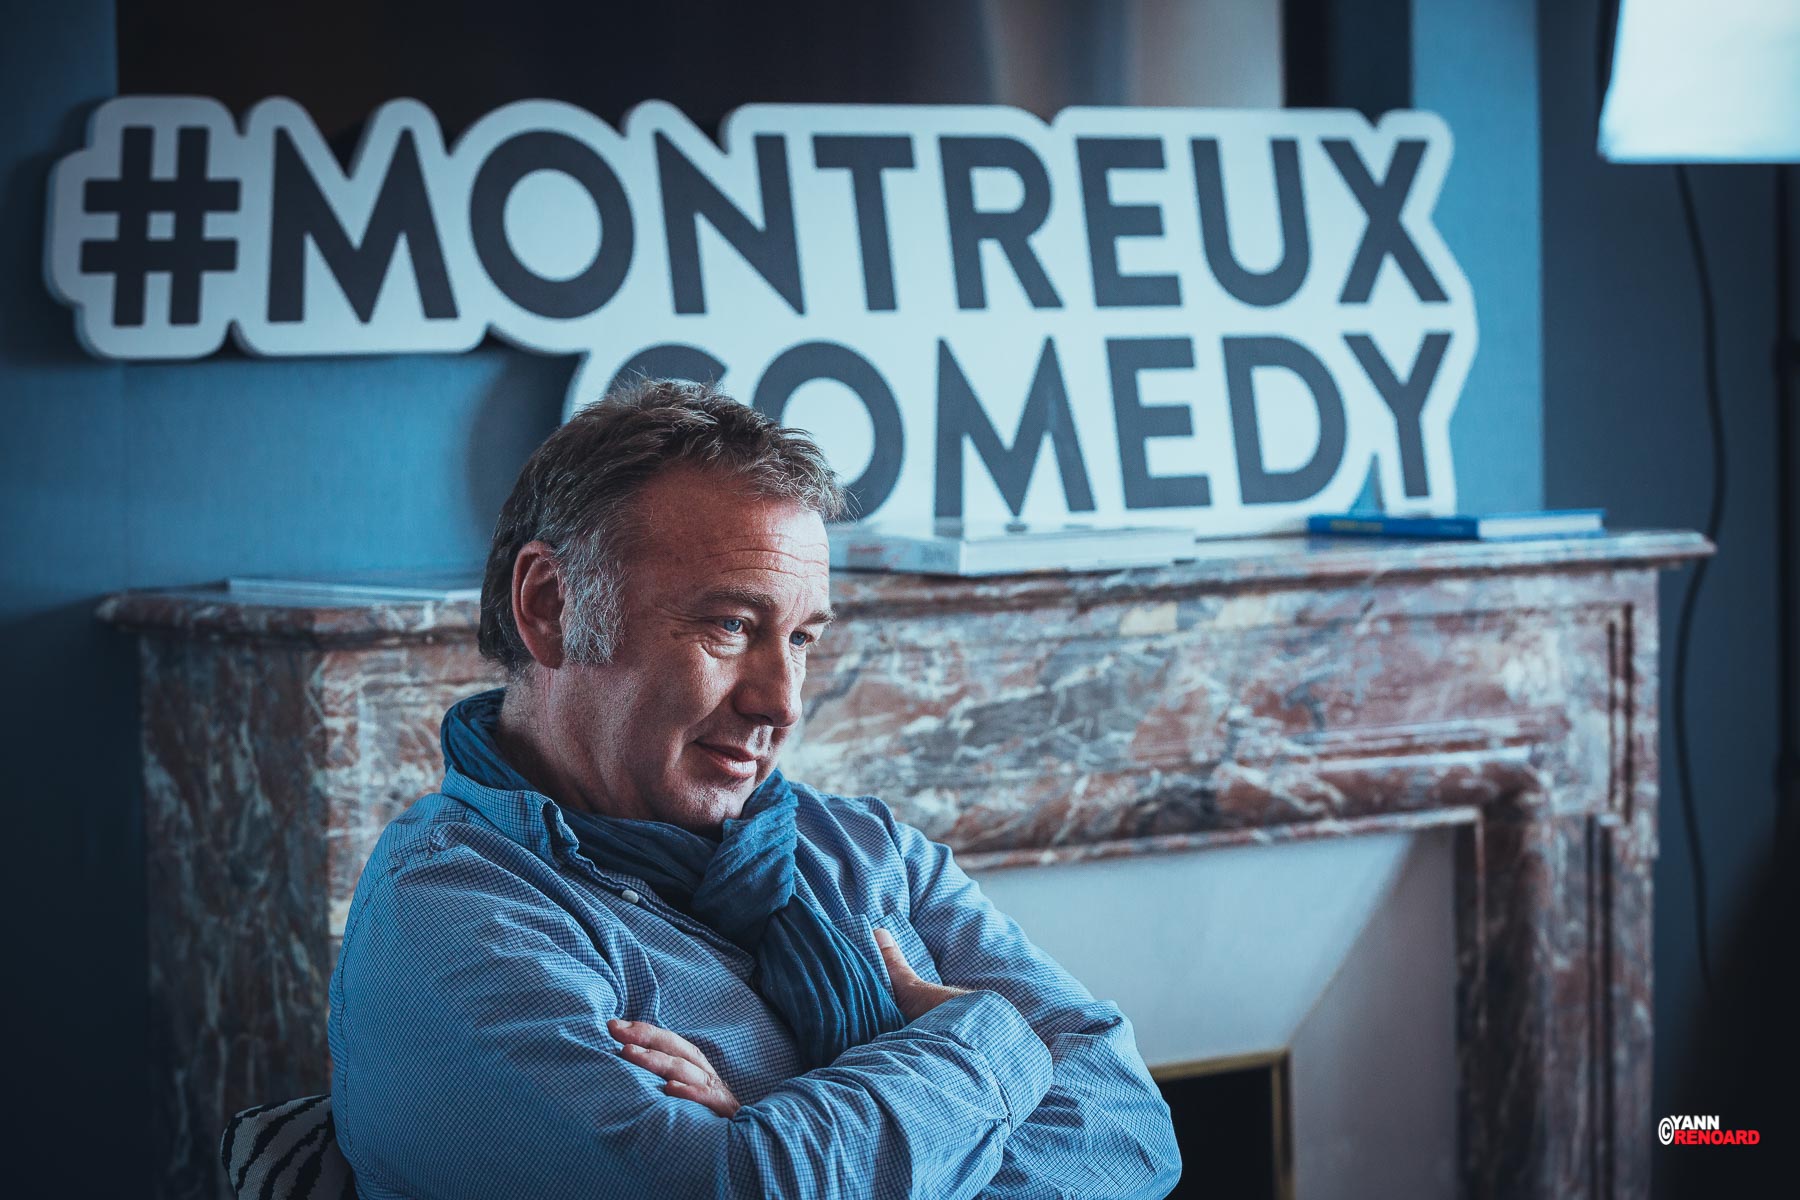 Jean-Luc Barbezat (Montreux Comedy Festival 2017)